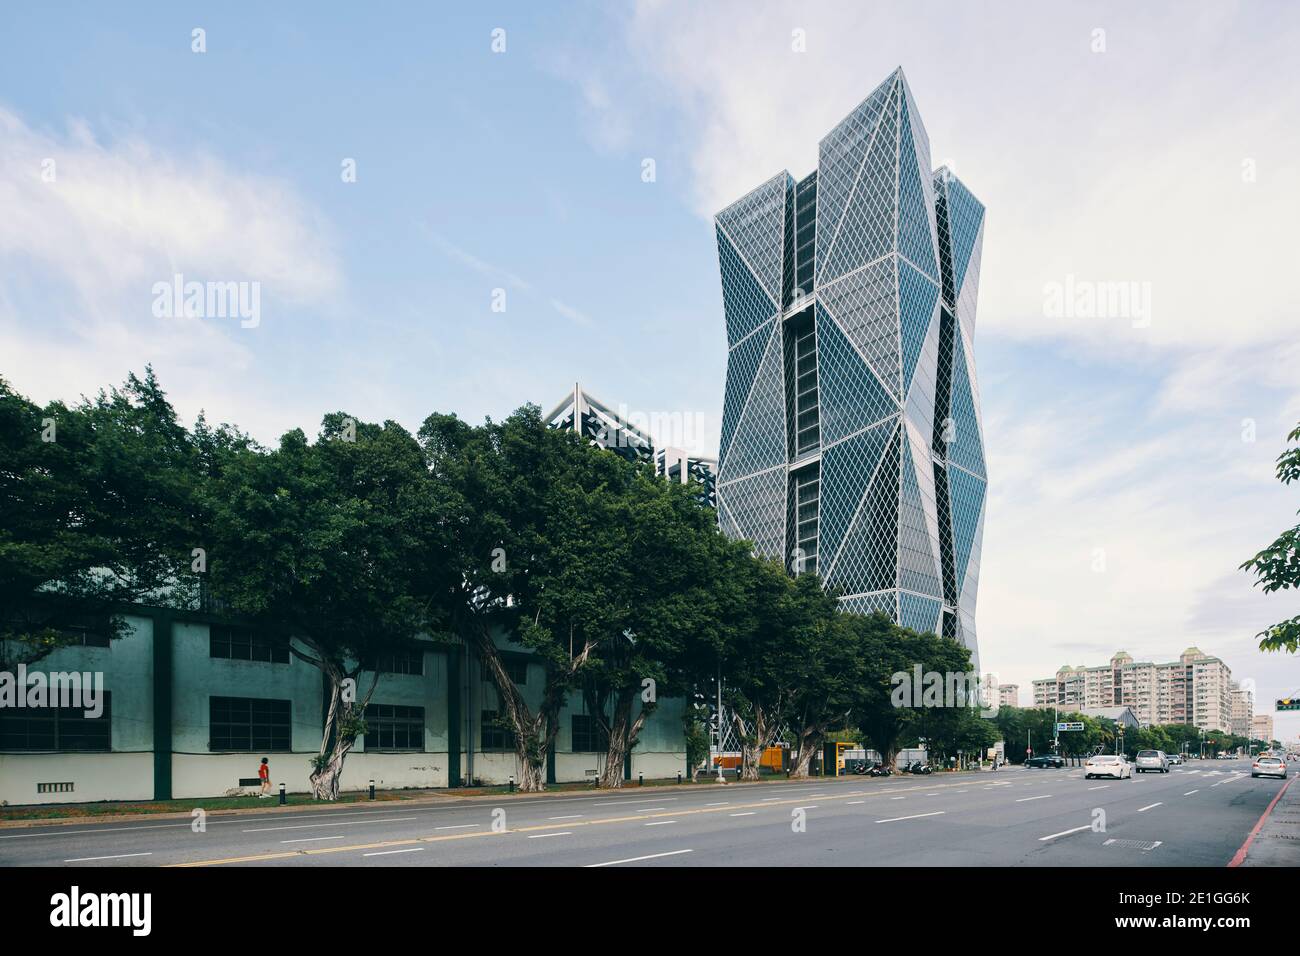 Vue extérieure du siège social de China Steel Corporation, un gratte-ciel avec un mur-rideau double en forme de diamant à Kaohsiung, Taïwan. Banque D'Images